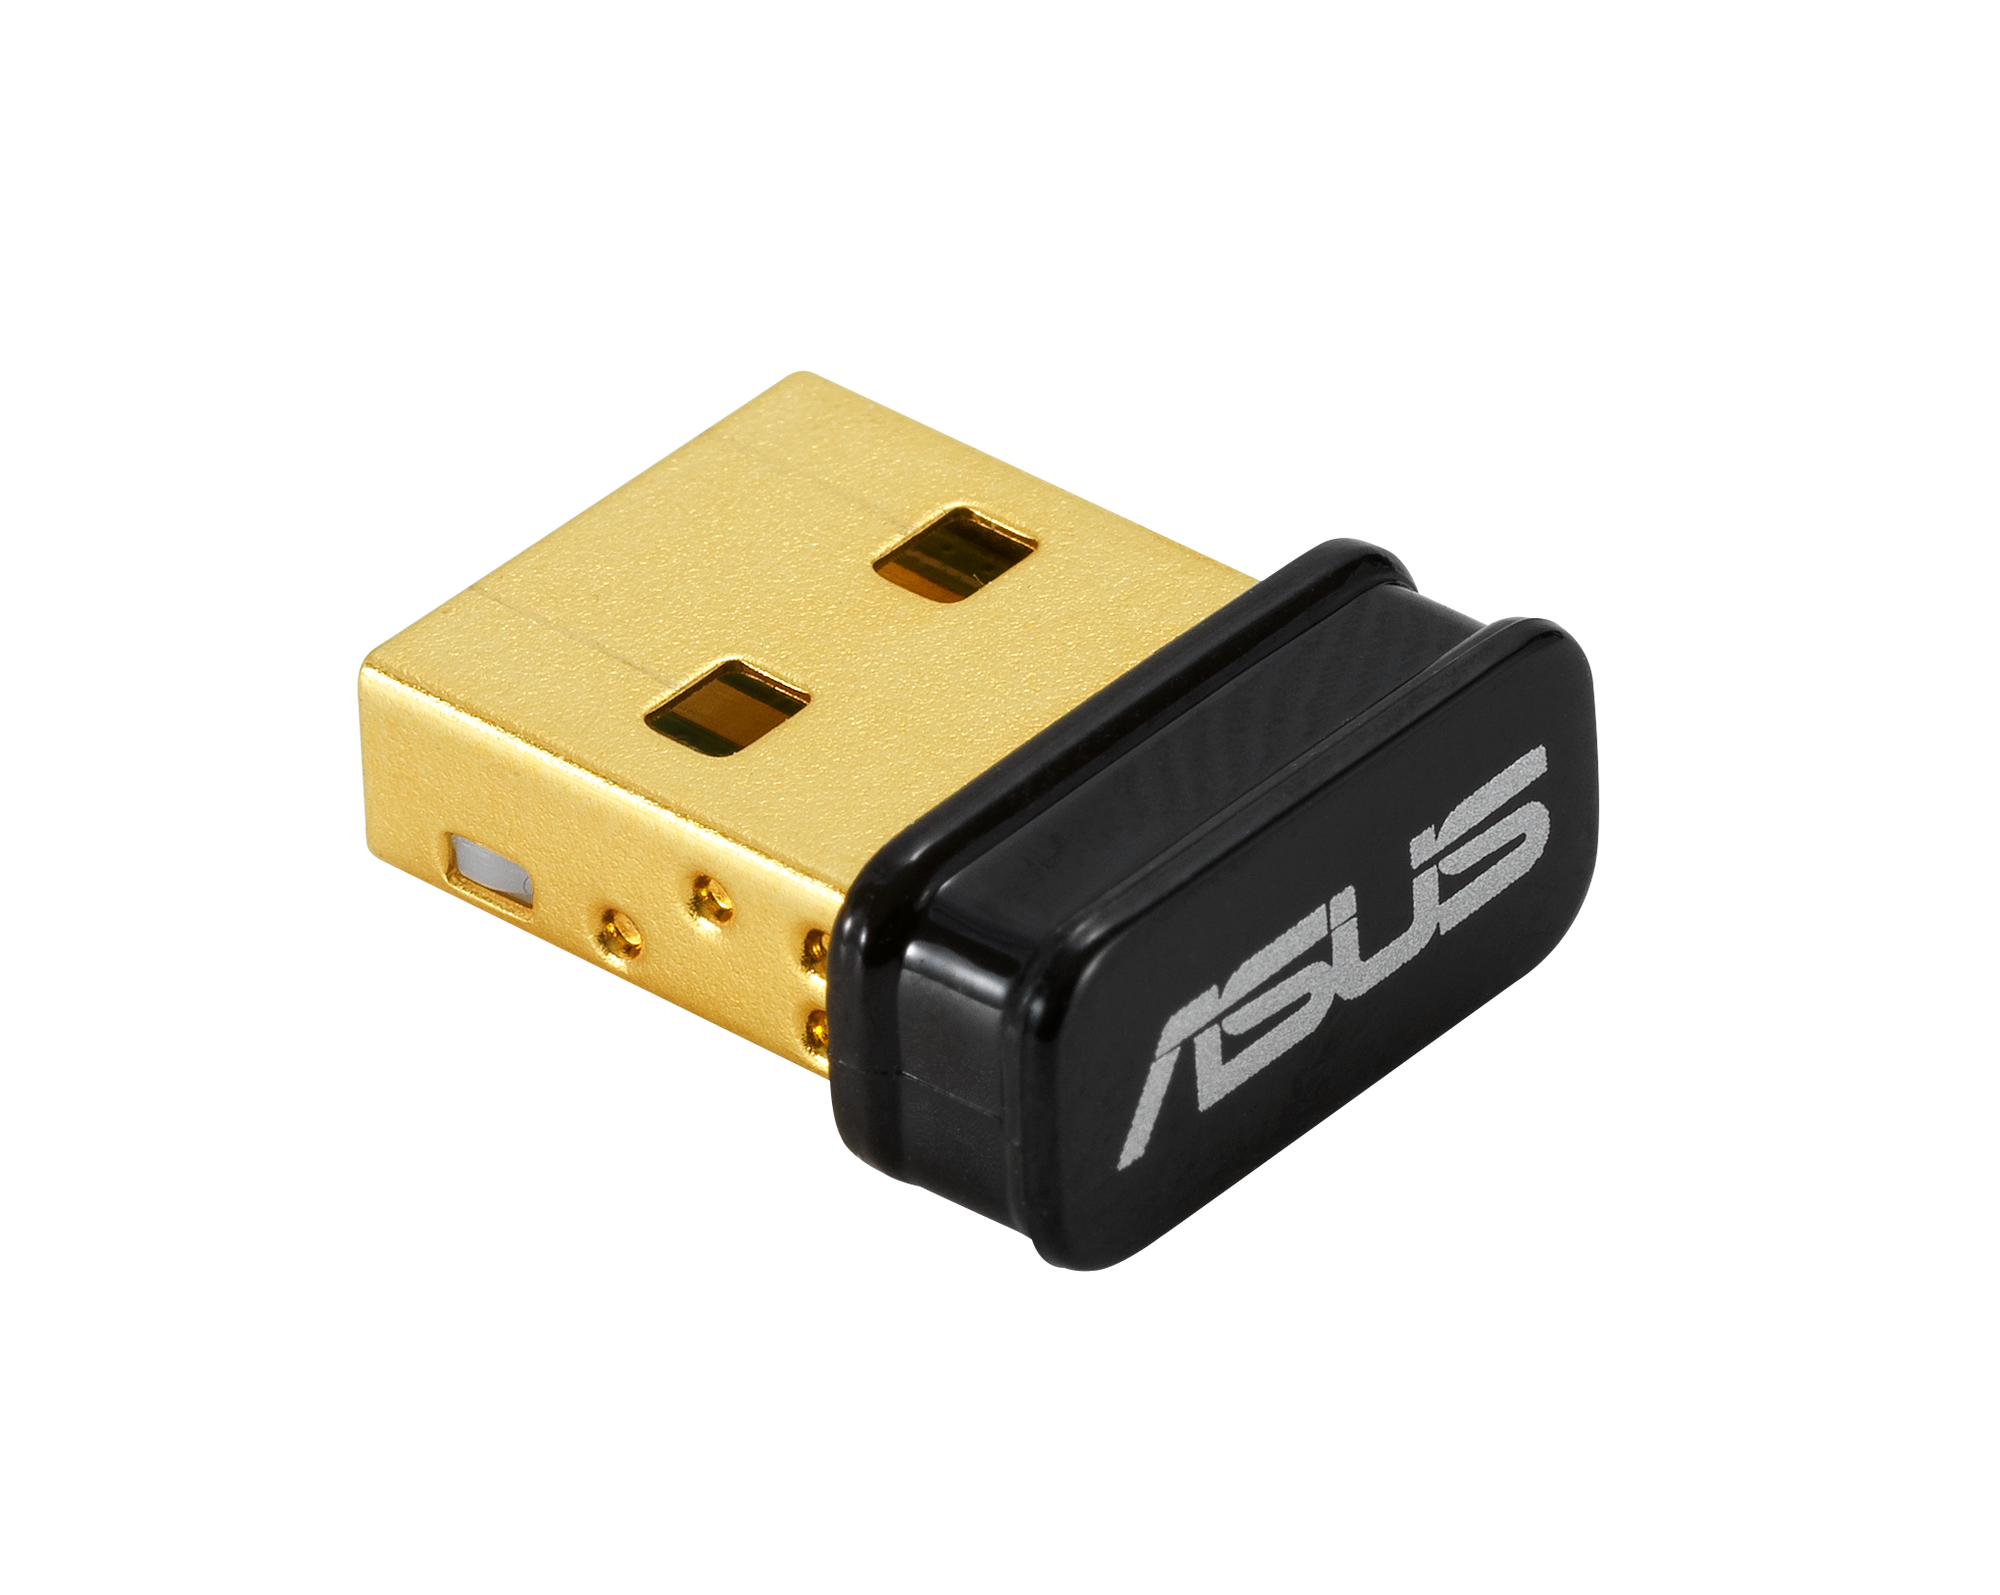 ASUS USB-N10 NANO B1 N150